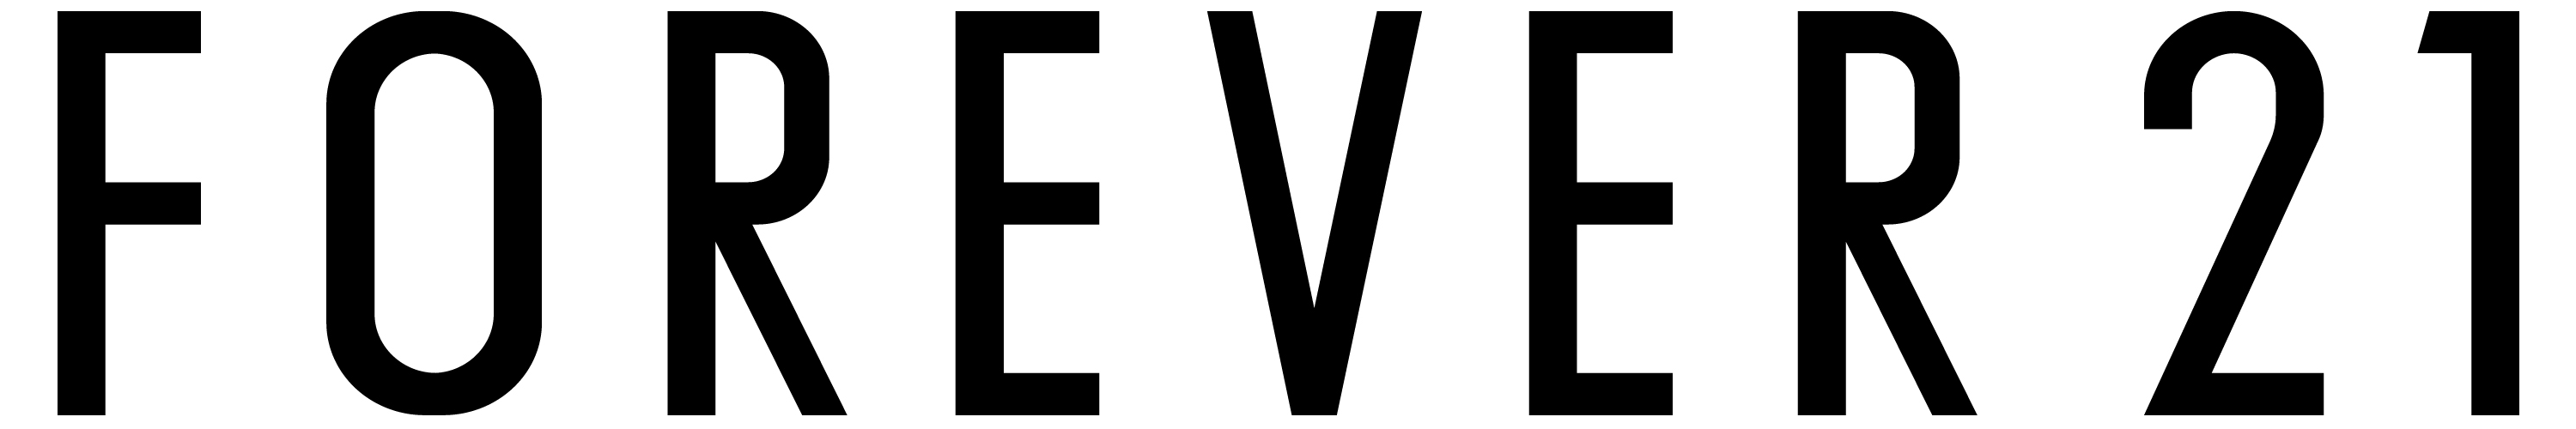 Image result for forever 21 logo